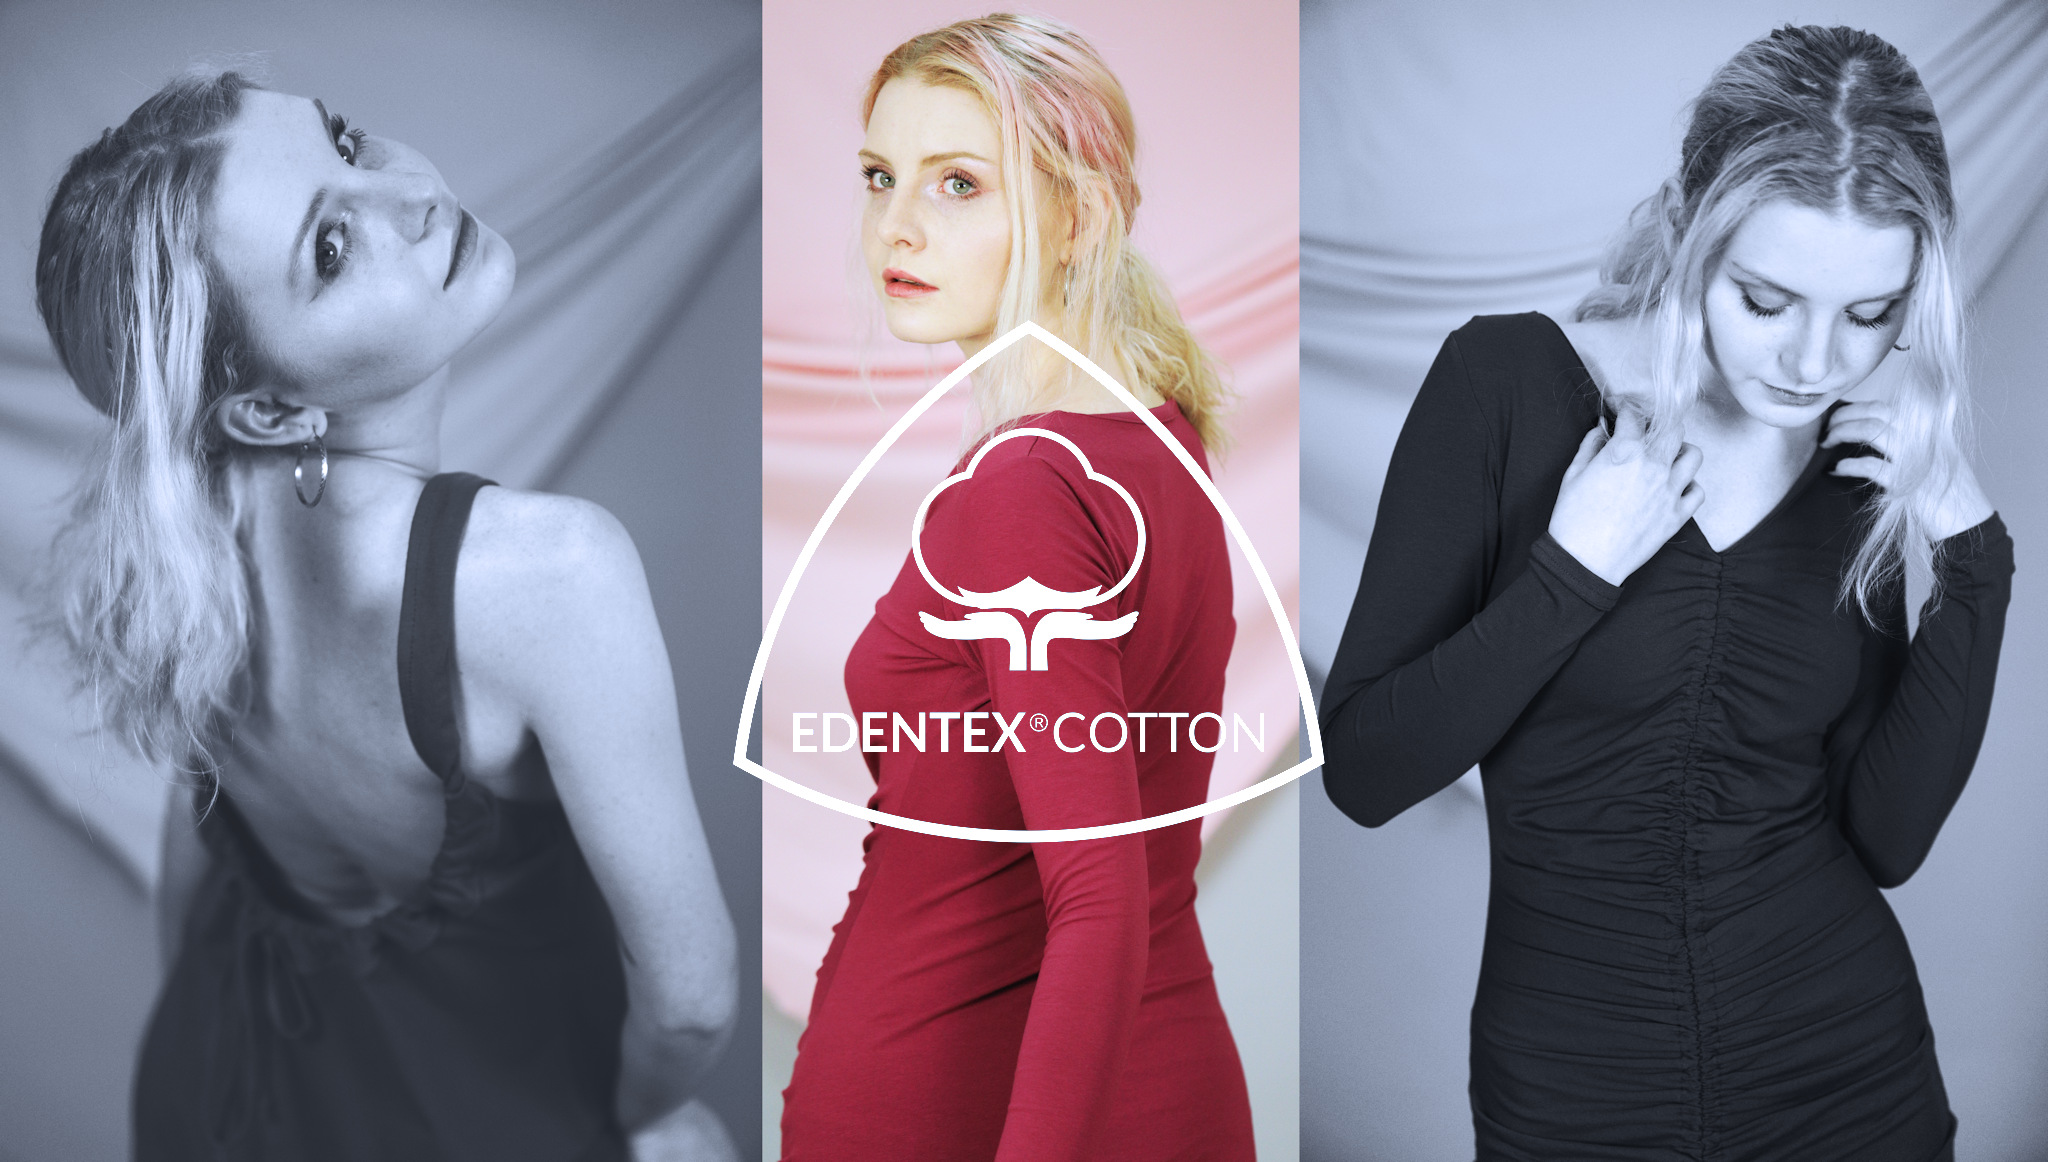 Przeznaczone tylko dla wymagających producentów, dzianiny EDENTEX® są używane do produkcji markowej odzieży dziecięcej, ciążowej, sportowej, bielizny oraz wszędzie tam, gdzie ceni się komfort oraz elegancję